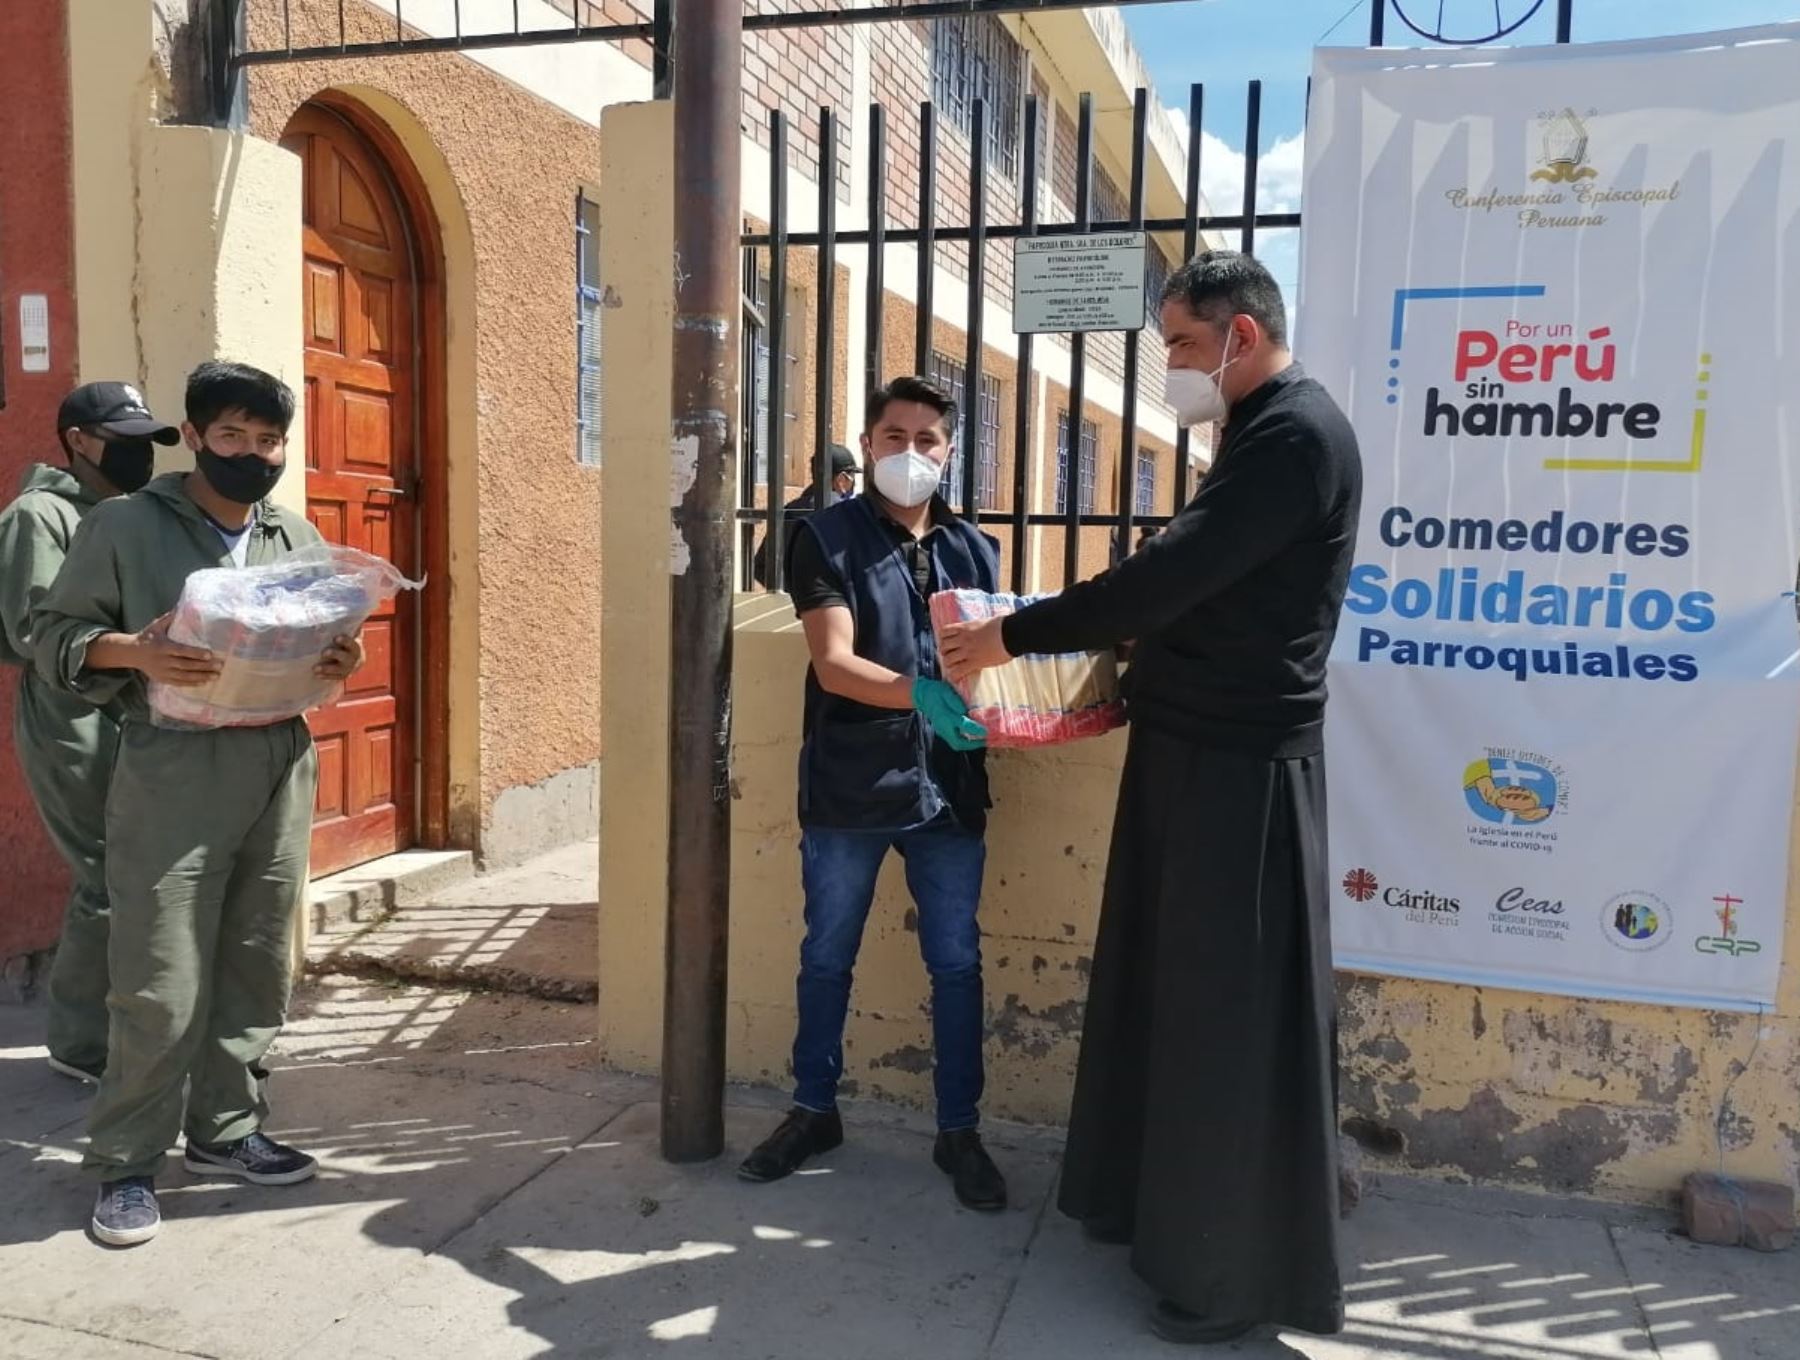 La iglesia católica entregó alimentos de forma gratuita a más de 6,600 familias vulnerables de Cusco, afectadas por la pandemia de coronavirus. ANDINA/Difusión